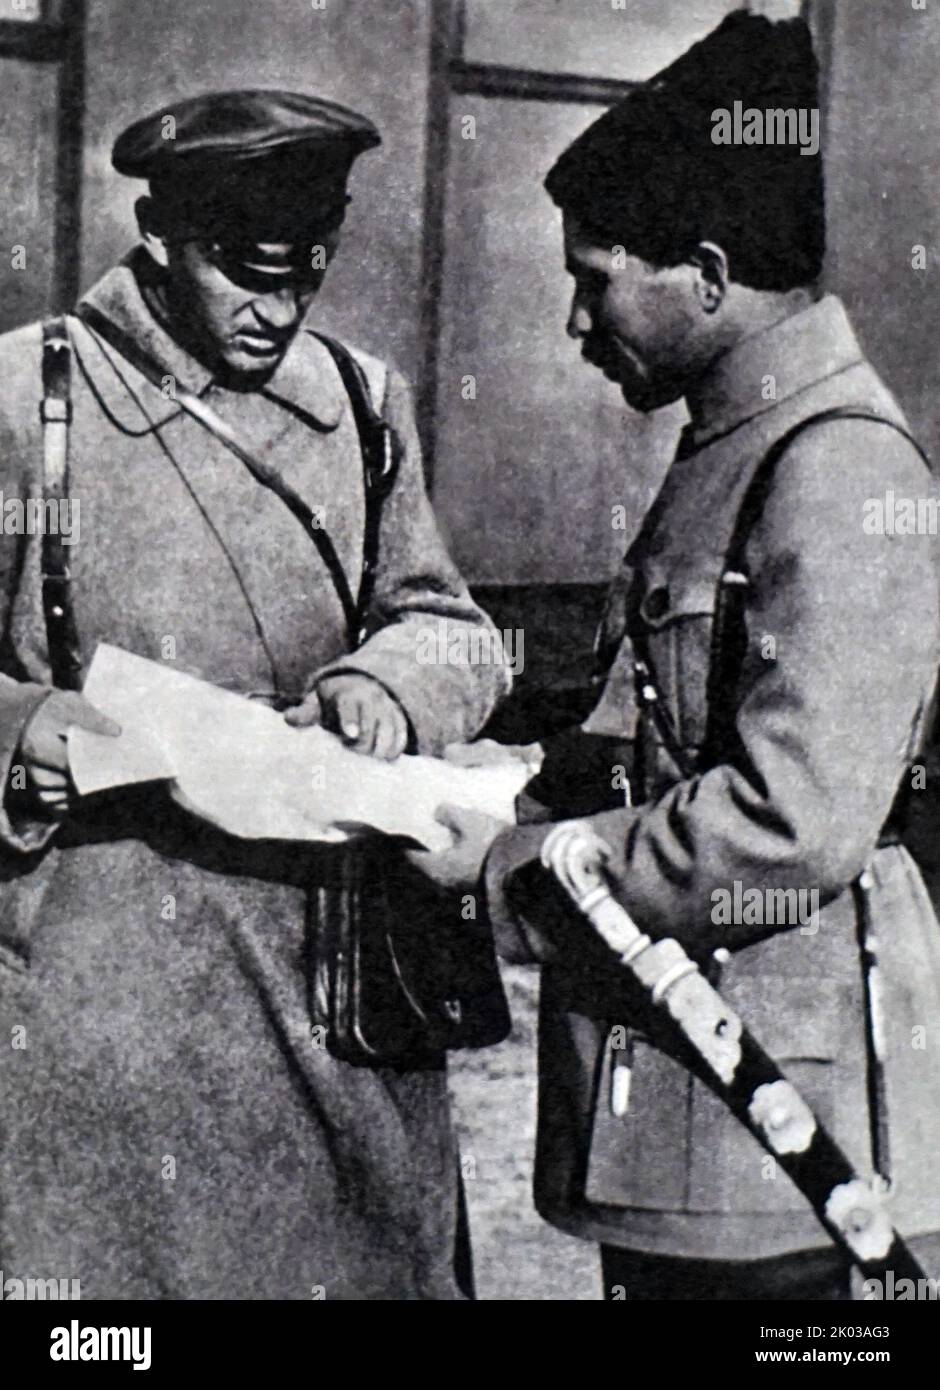 Wassili Chapaew - auf der rechten Seite. (1887 - 5. September 1919) war ein gefeierter russischer Soldat und Kommandant der Roten Armee während des russischen Bürgerkrieges. Stockfoto